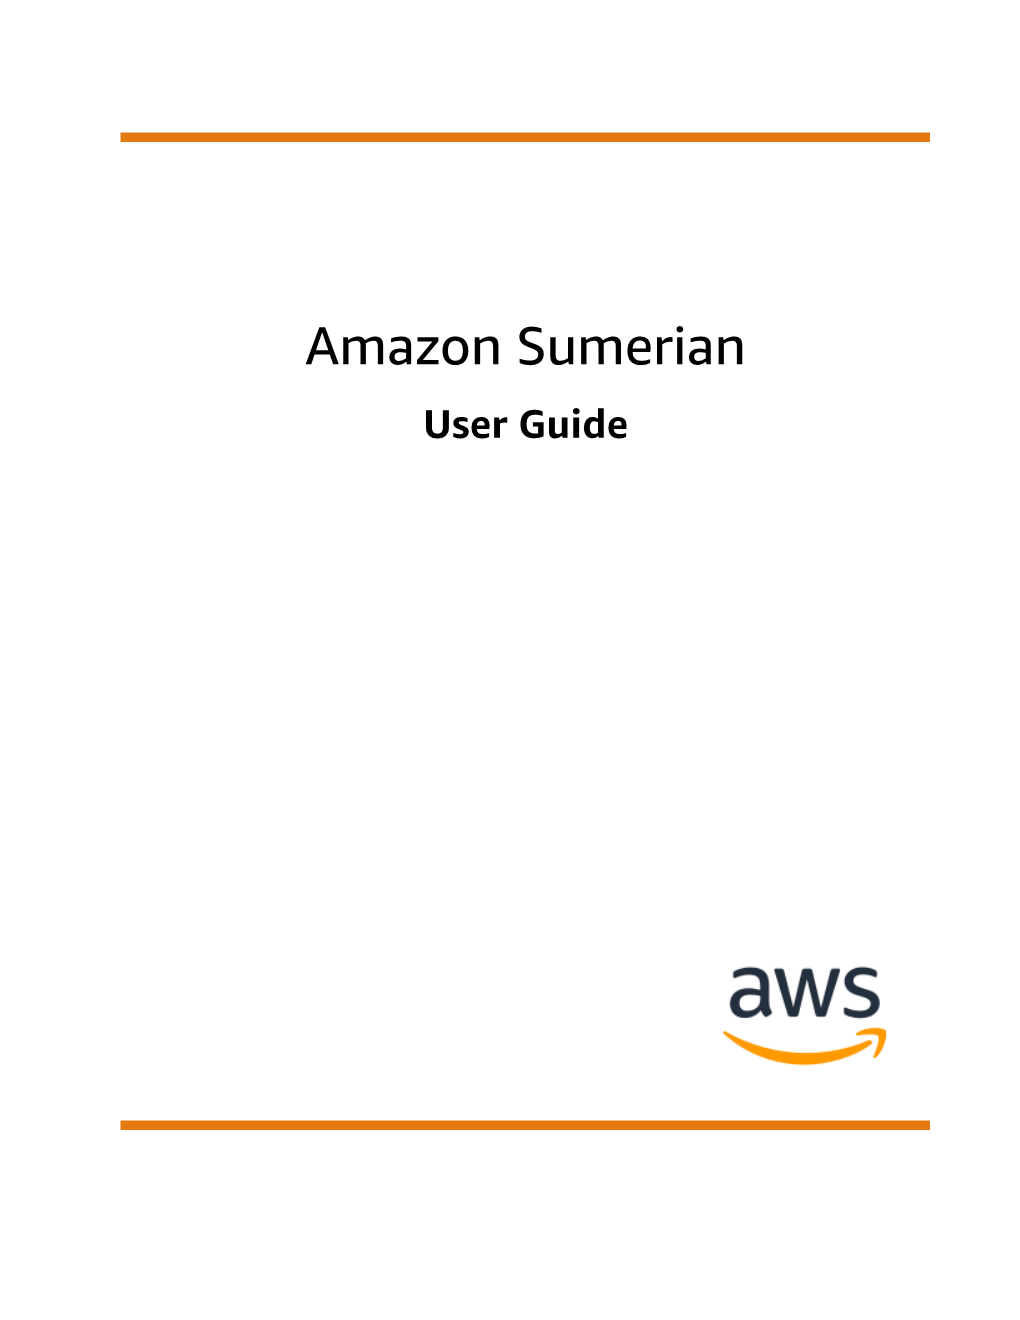 Amazon Sumerian User Guide Amazon Sumerian User Guide